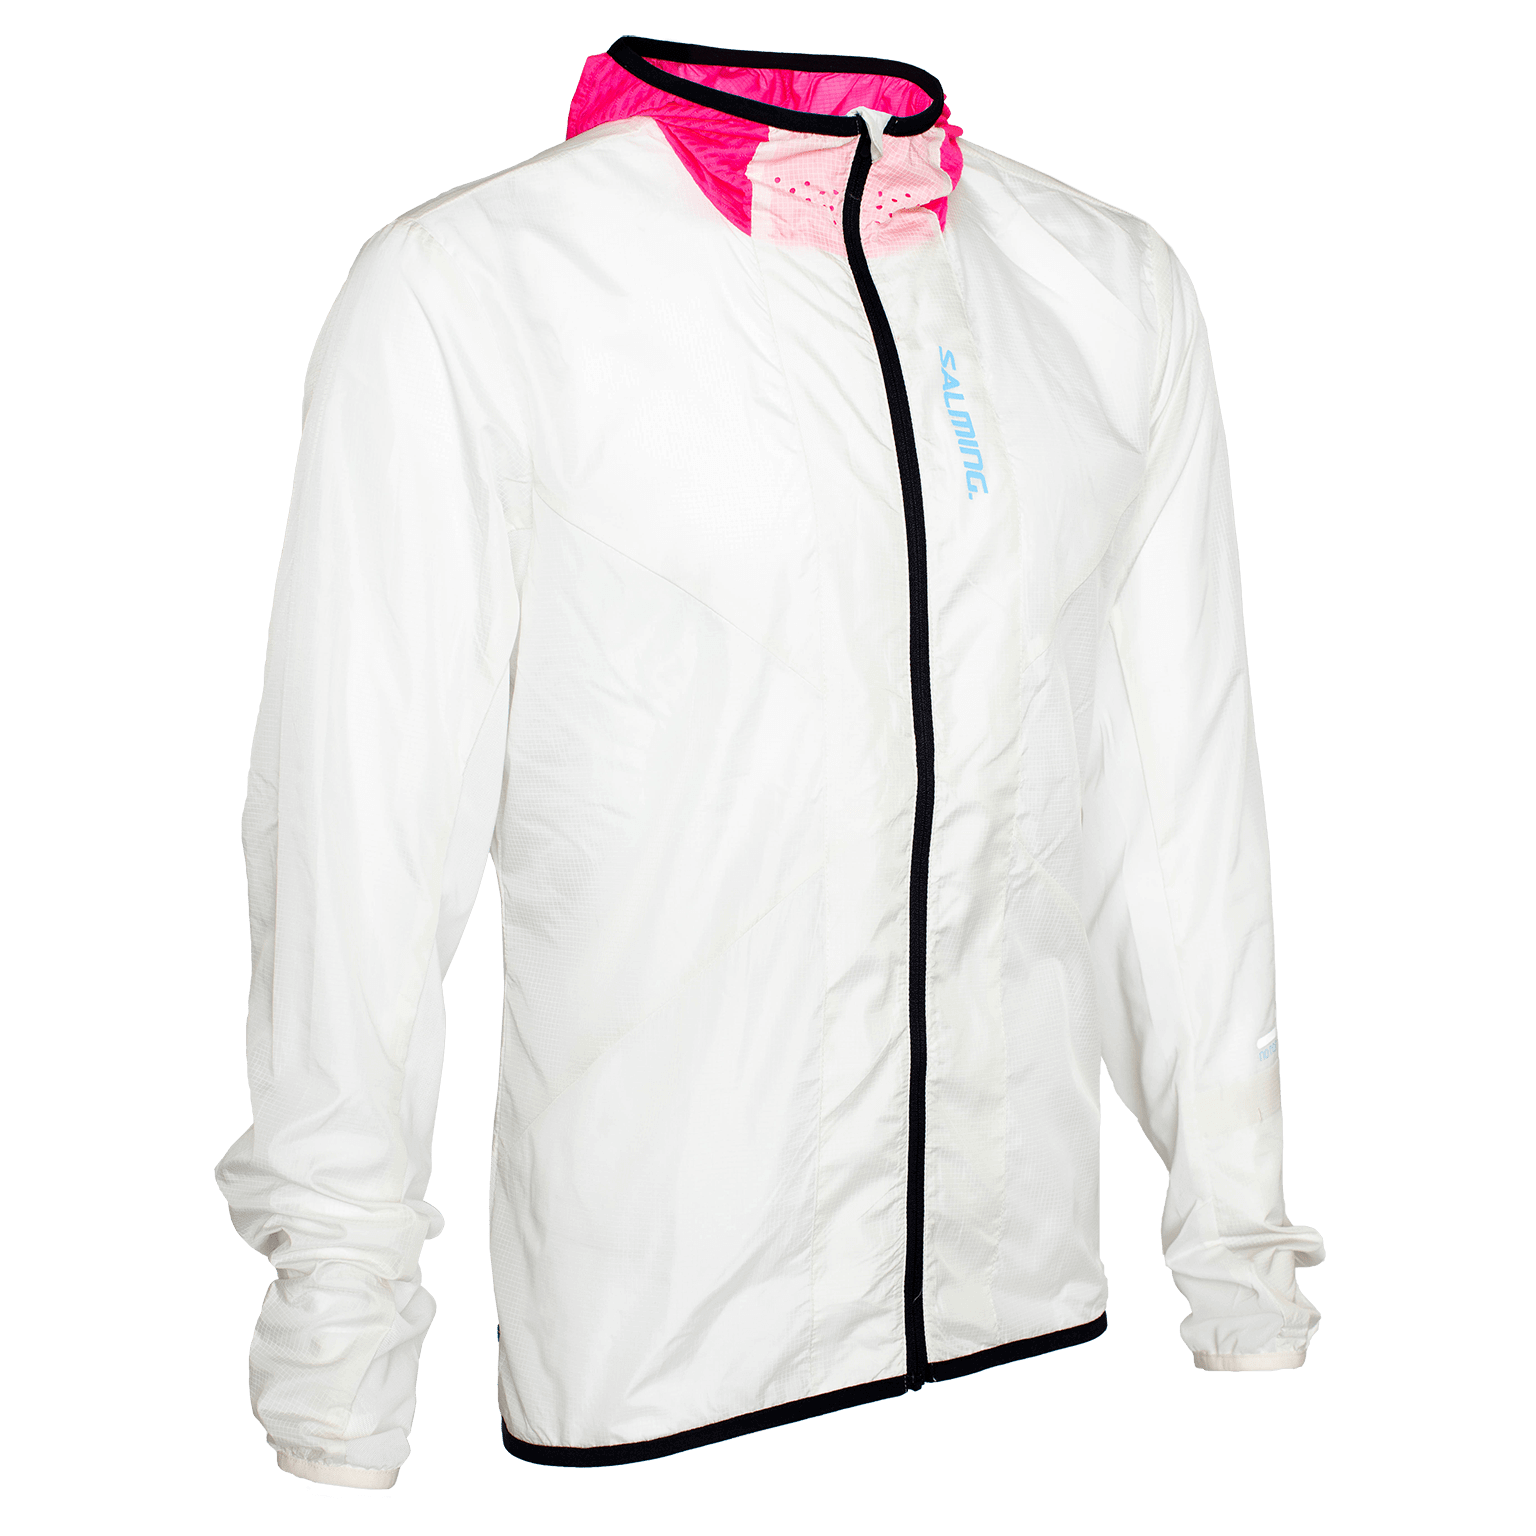 SALMING Sarek Jacket 21 Unisex White/Pink